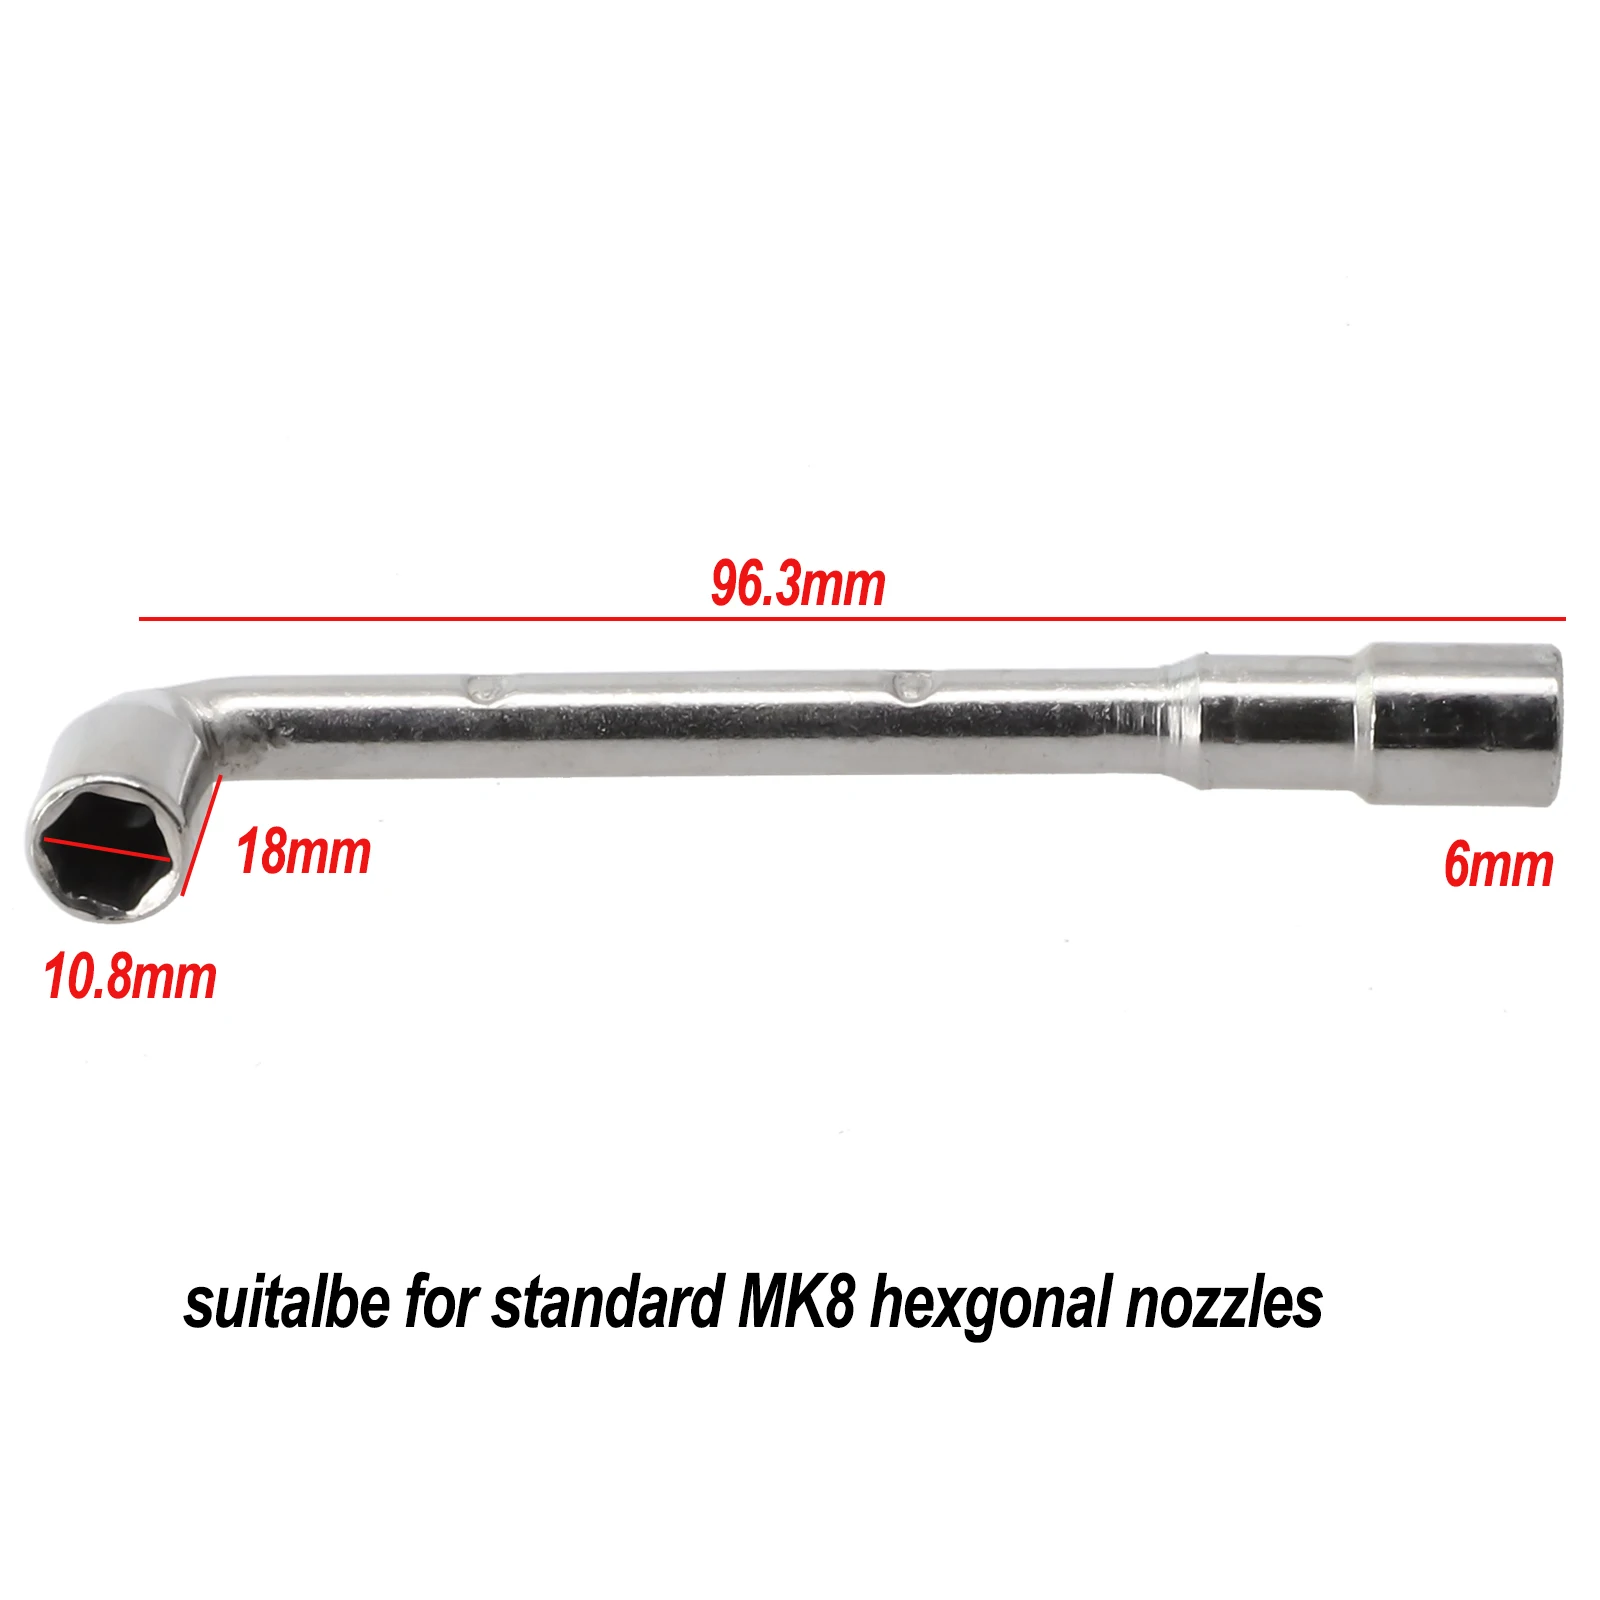 

Г-образный гаечный ключ для Ender 3 MK8 ручной инструмент шестигранные сопла гайка запчасти ремонтный рукав 6/7 мм крепление прочный